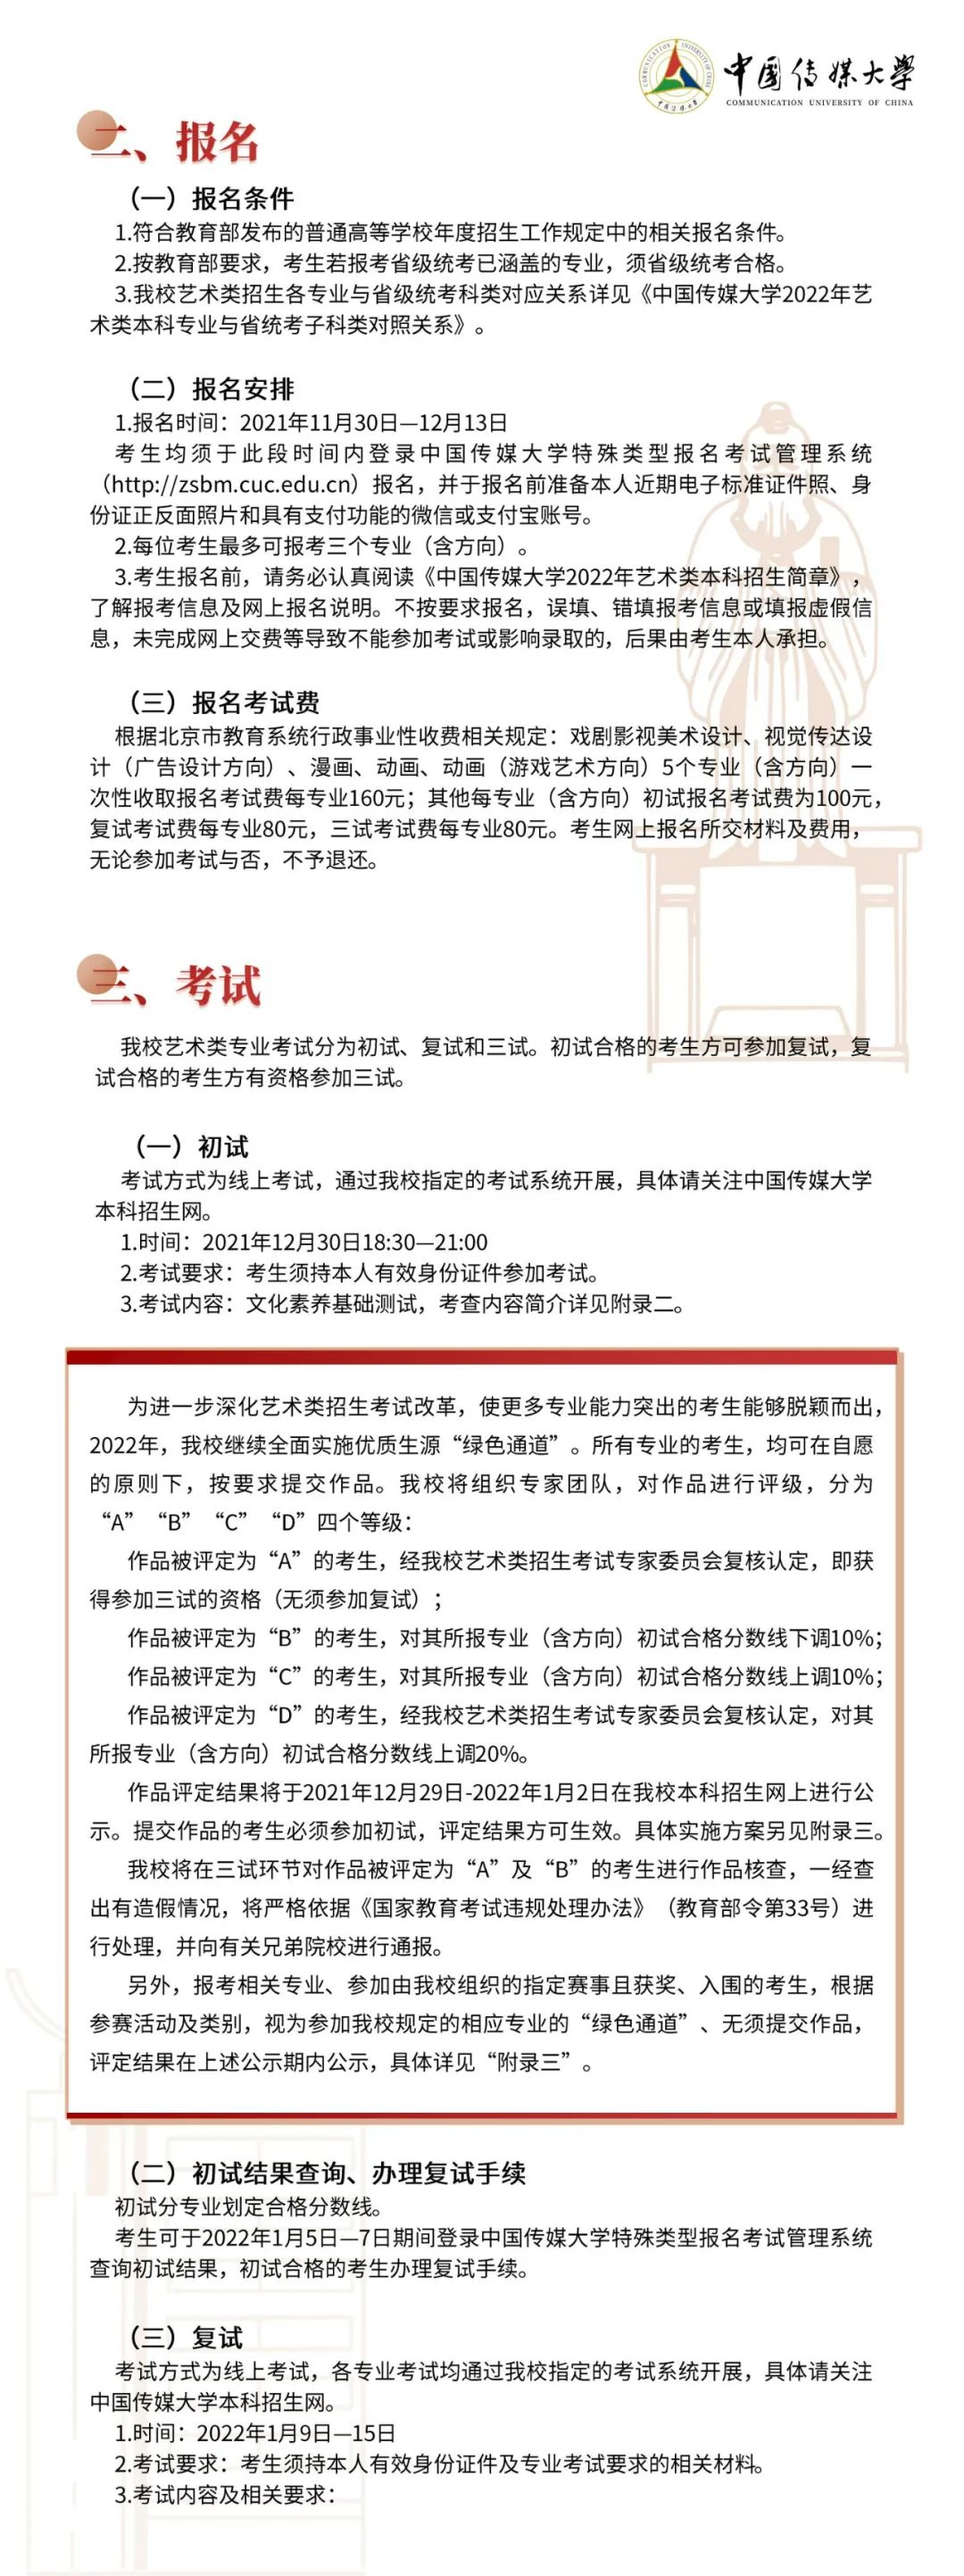 中国传媒大学2022年艺术类本科招生简章 (http://www.hsqixing.com/) 国内 第2张